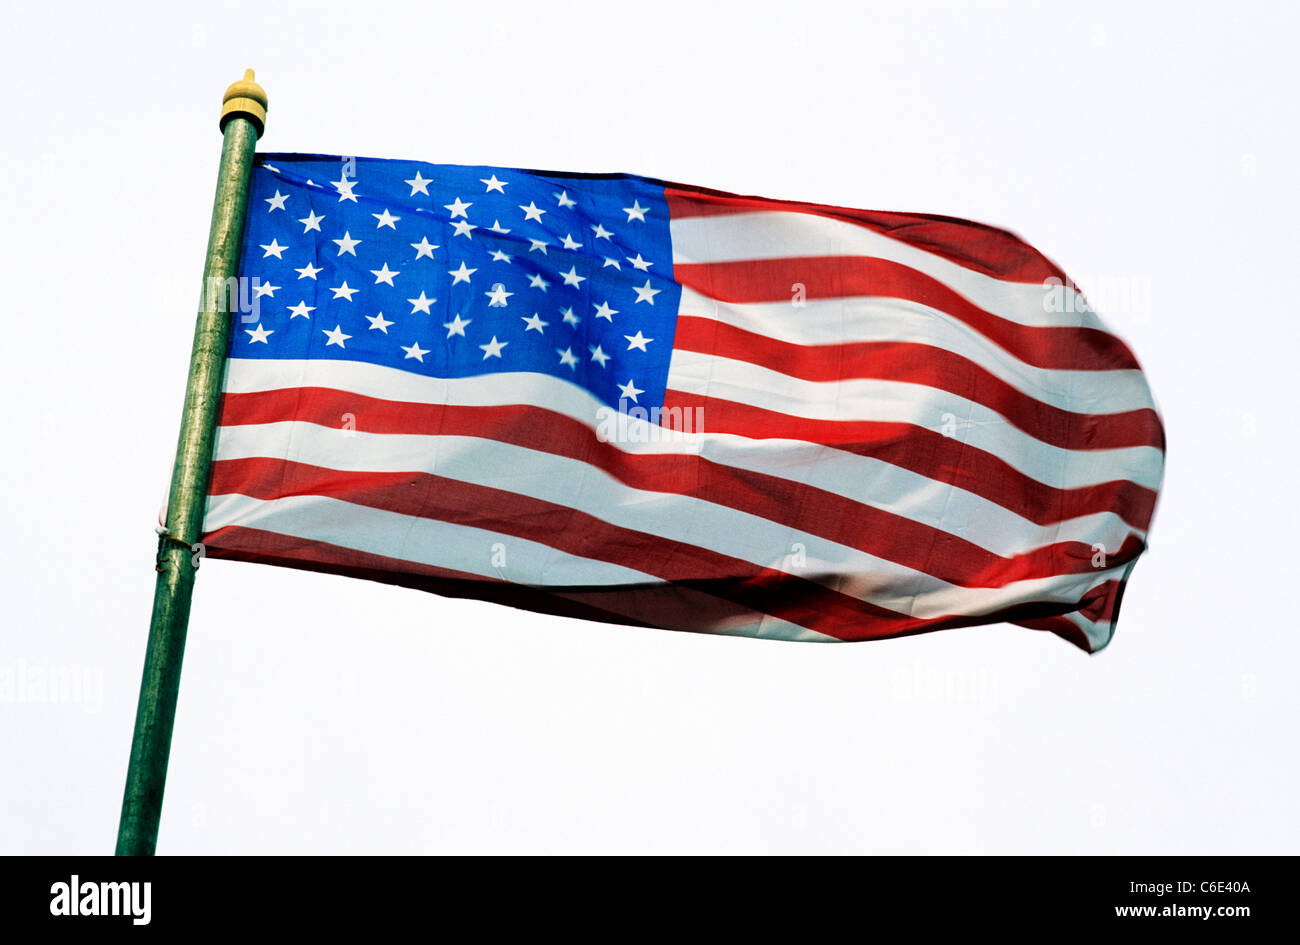 USA-Flagge, Stars And Stripes, Vereinigte Staaten von Amerika, amerikanische nationale Fahnen vom Fahnenmast Stockfoto